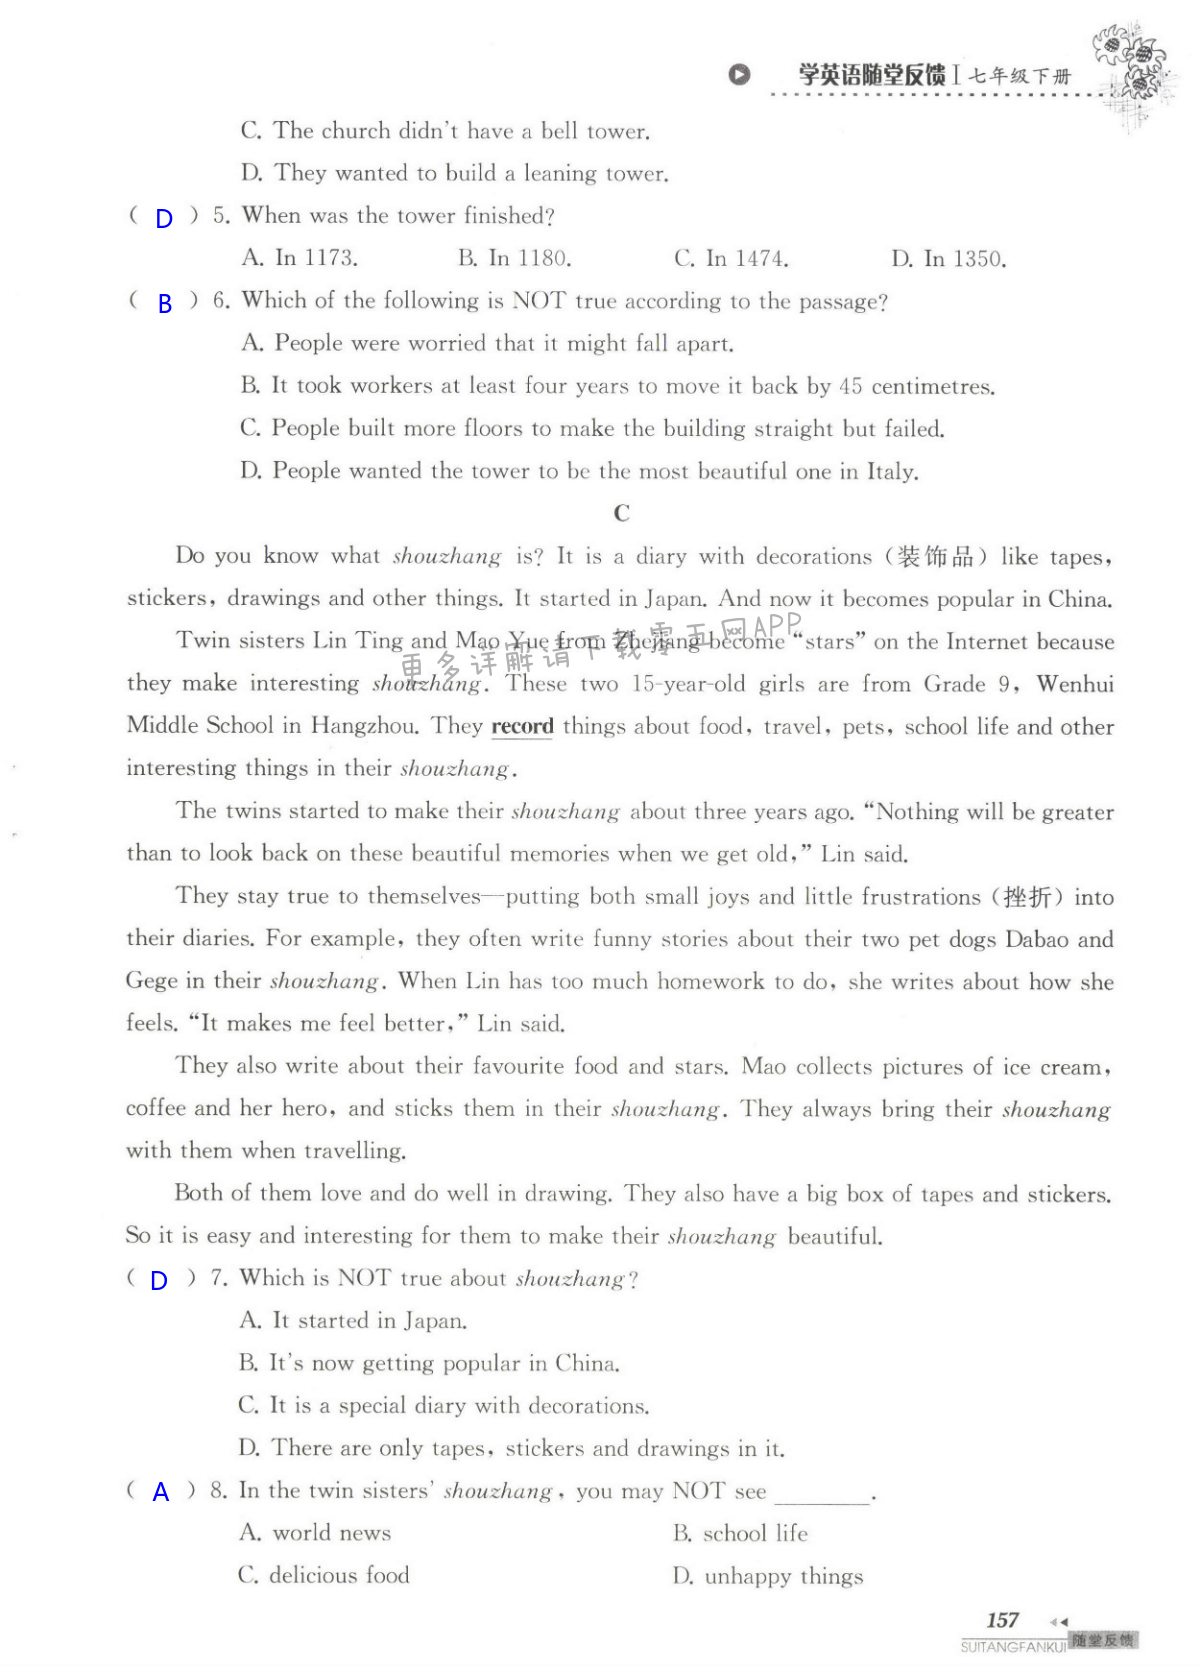 单元综合测试卷  Test for Unit 5 of 7B - 第157页